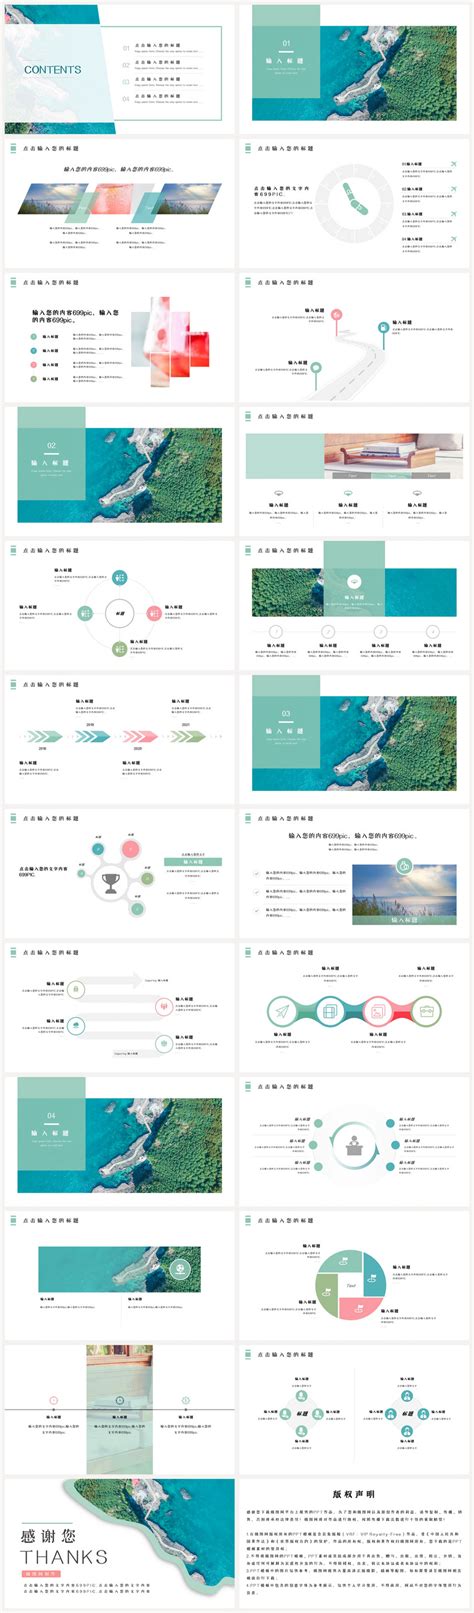 海南旅游线路设计与研究毕业论文 - 豆丁网